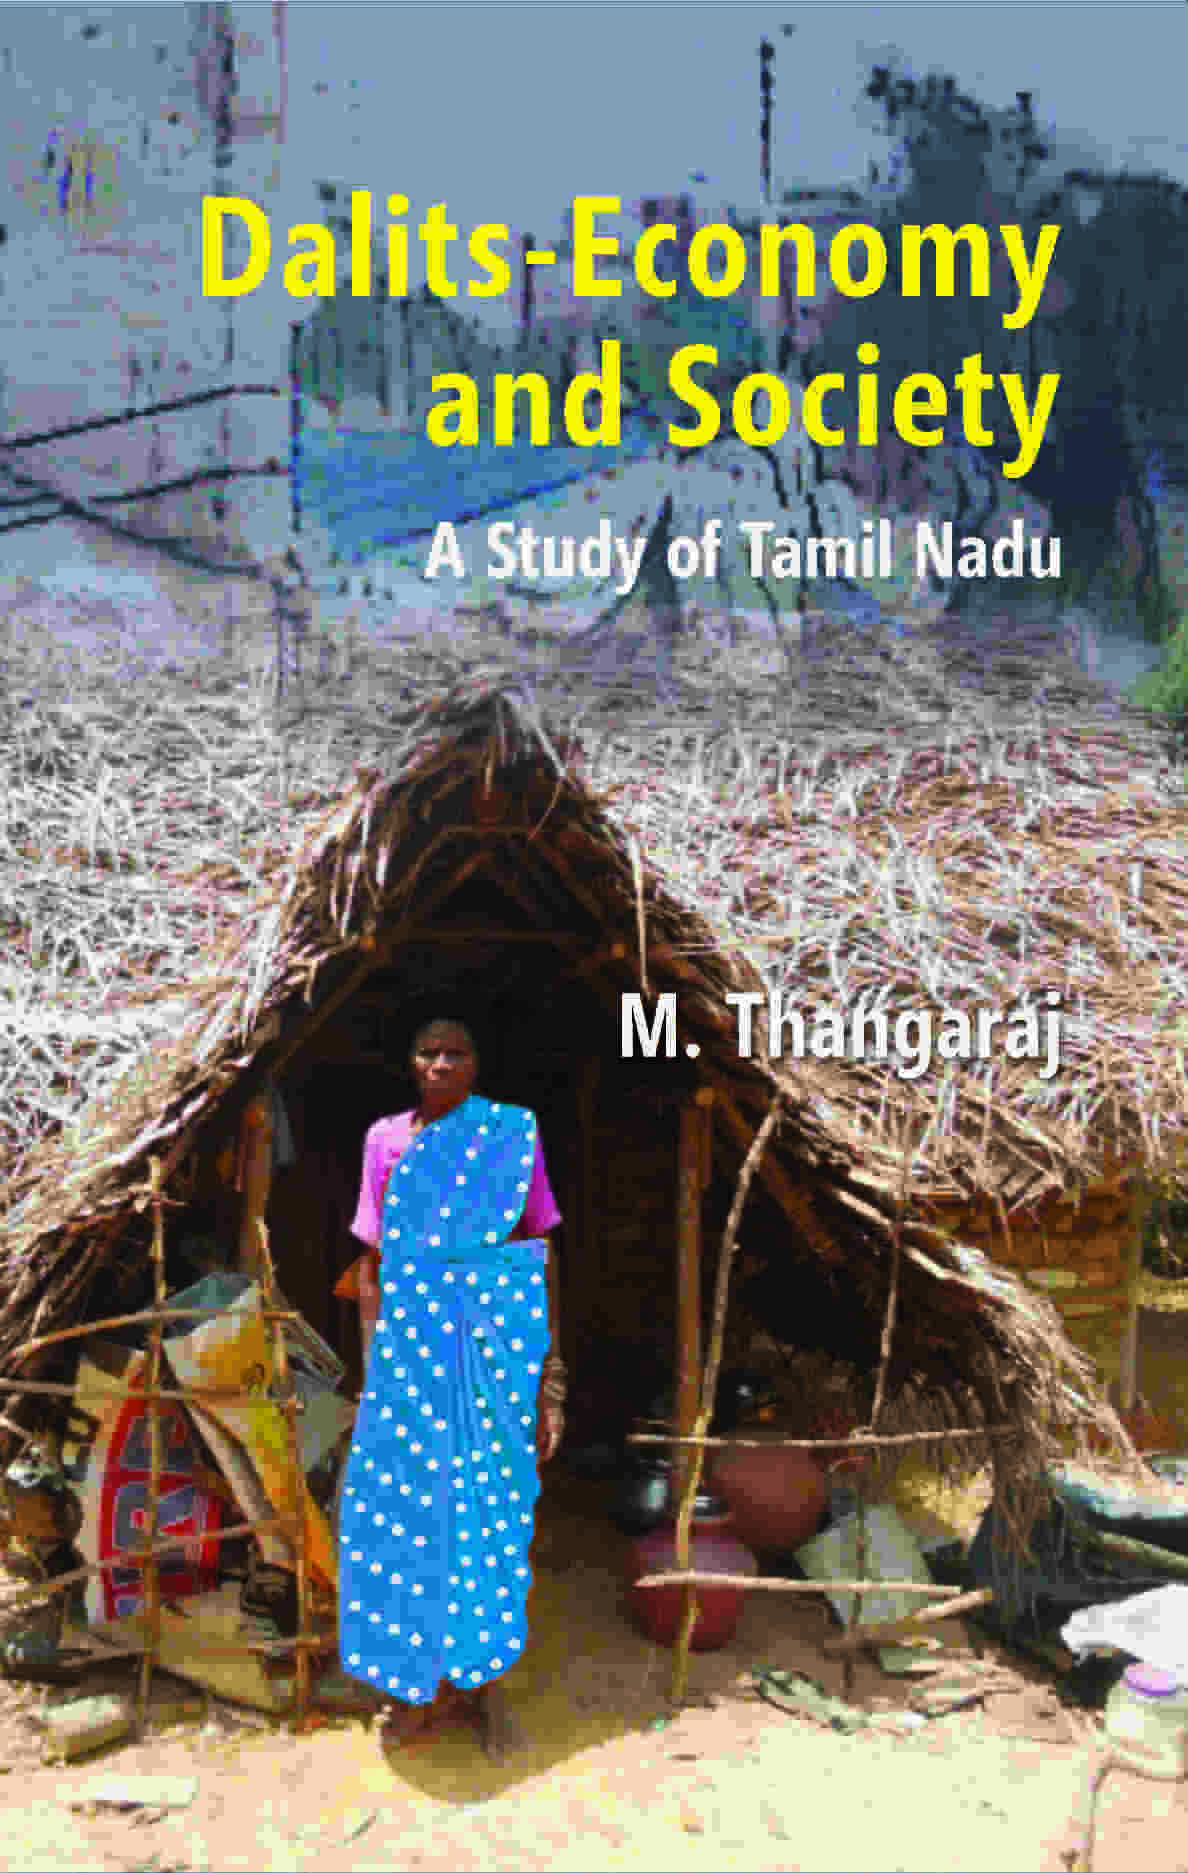 Dalits-Economy and Society: a Study of Tamil Nadu 